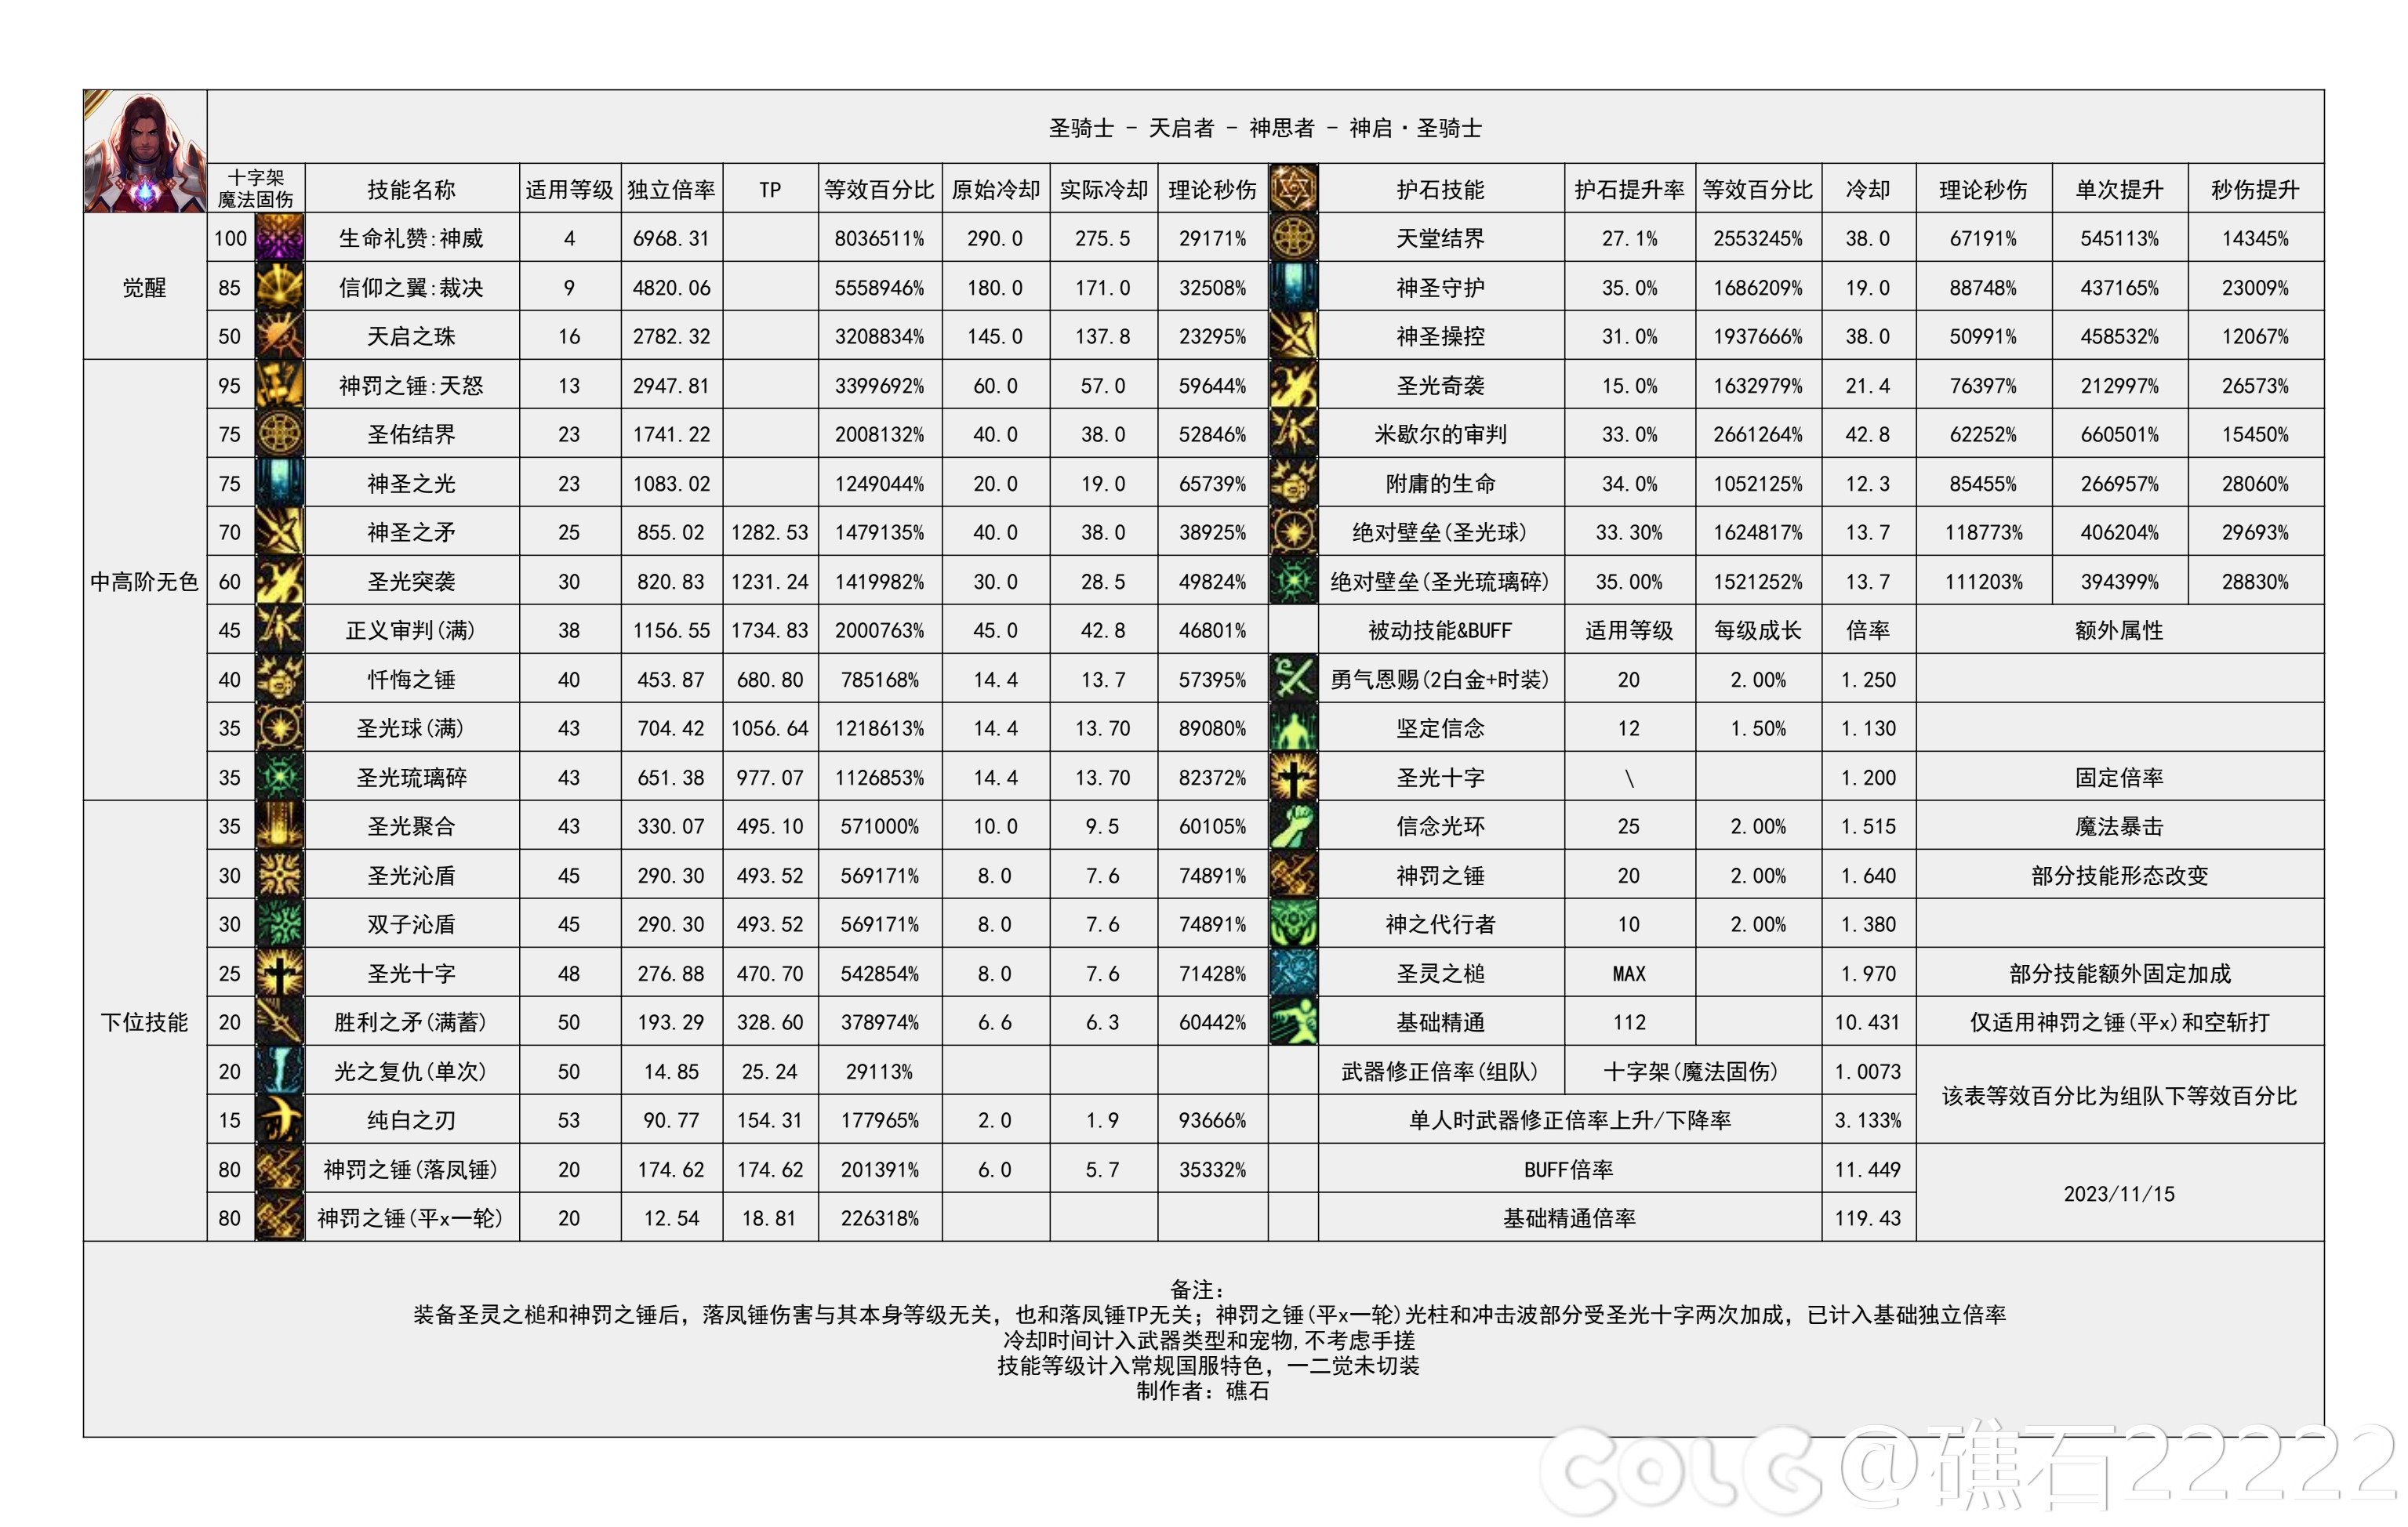 【国服现状】110版本输出职业数据表(国正5.15)(存档)50